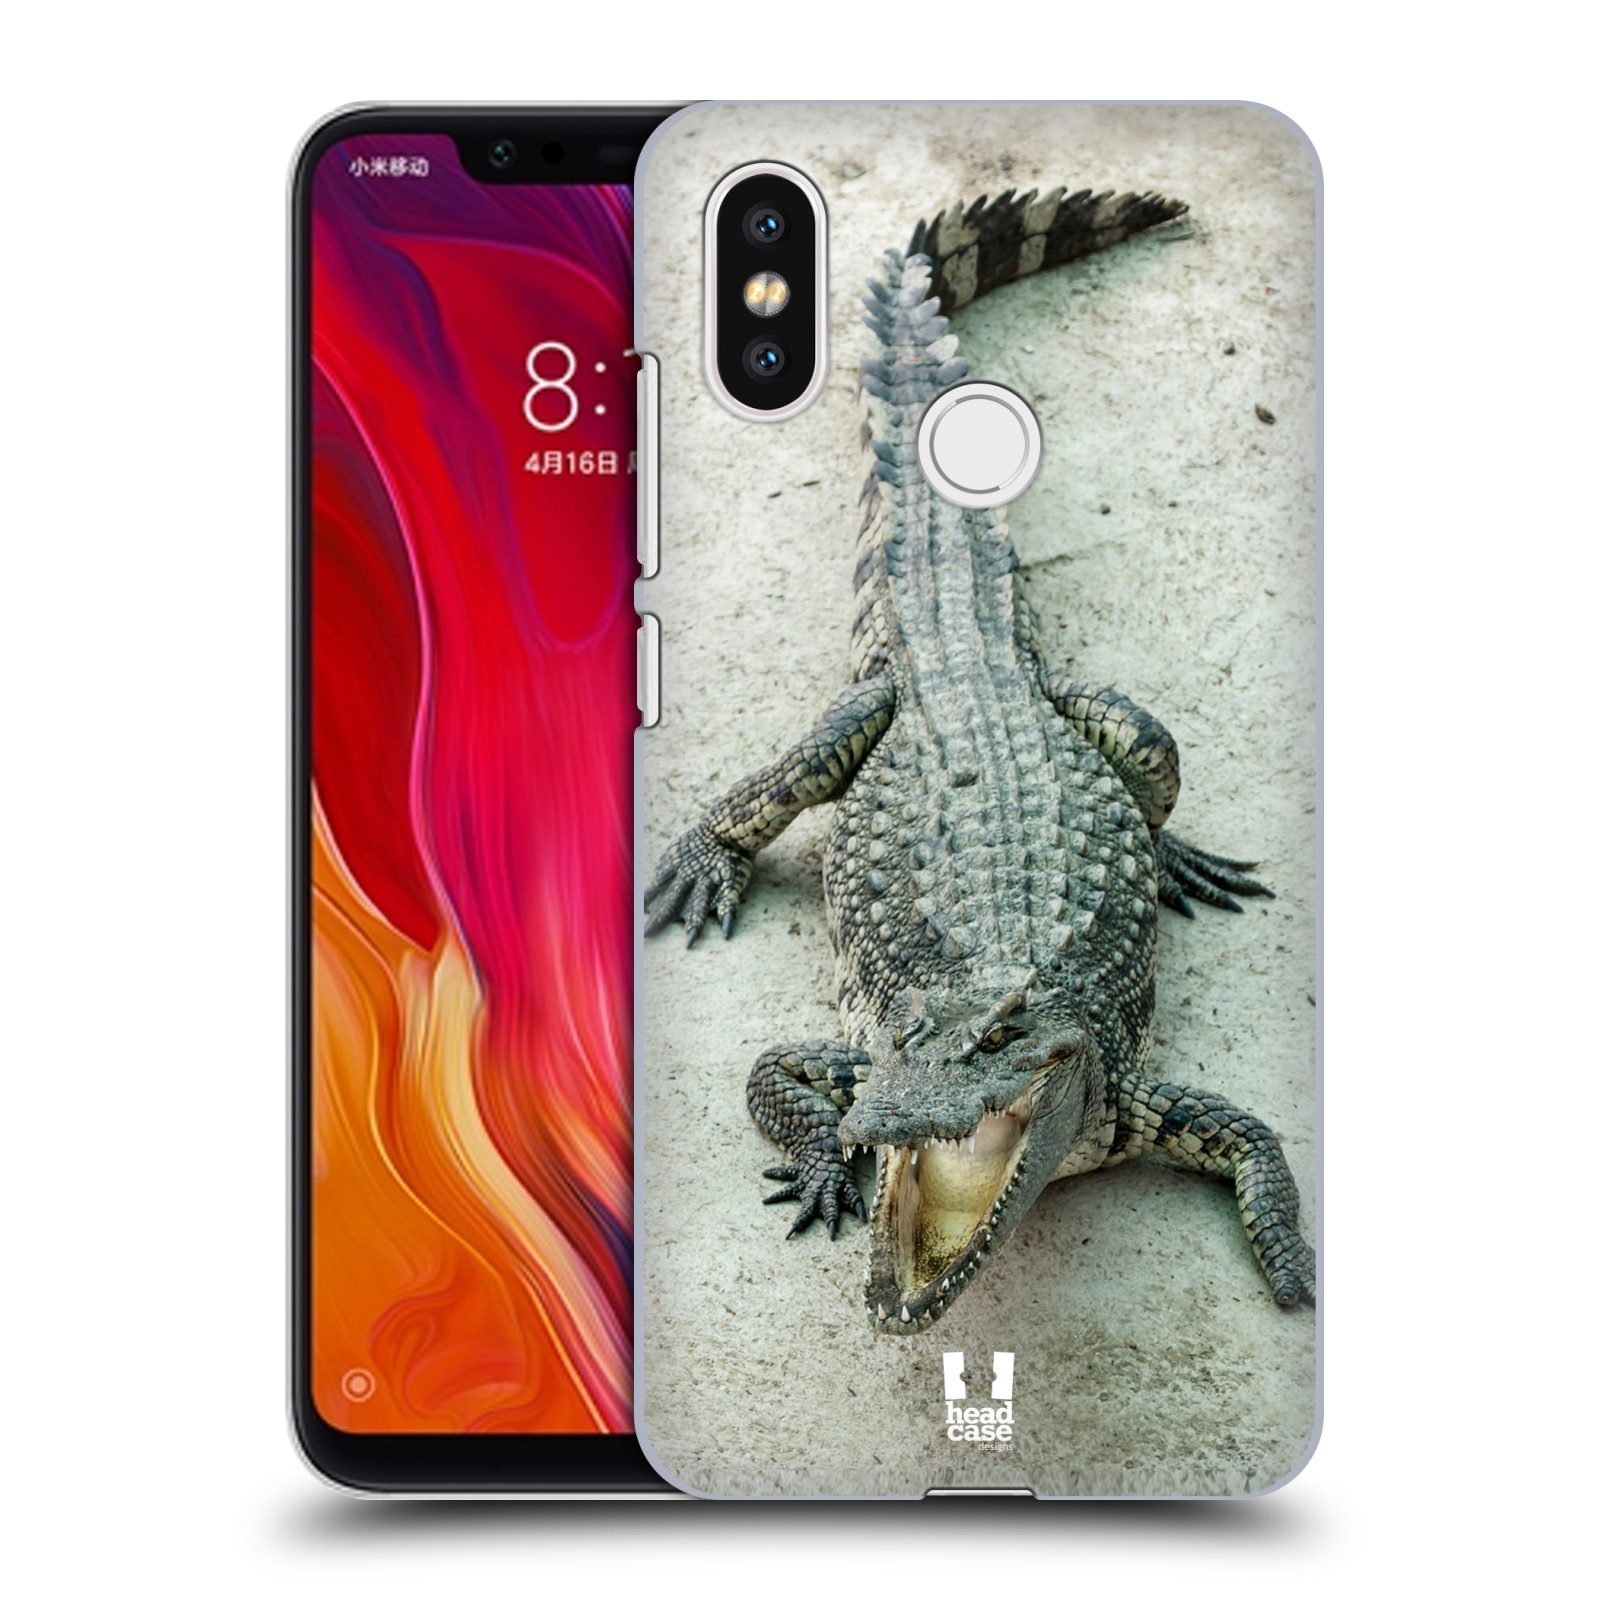 HEAD CASE plastový obal na mobil Xiaomi Mi 8 vzor Divočina, Divoký život a zvířata foto KROKODÝL, KAJMAN